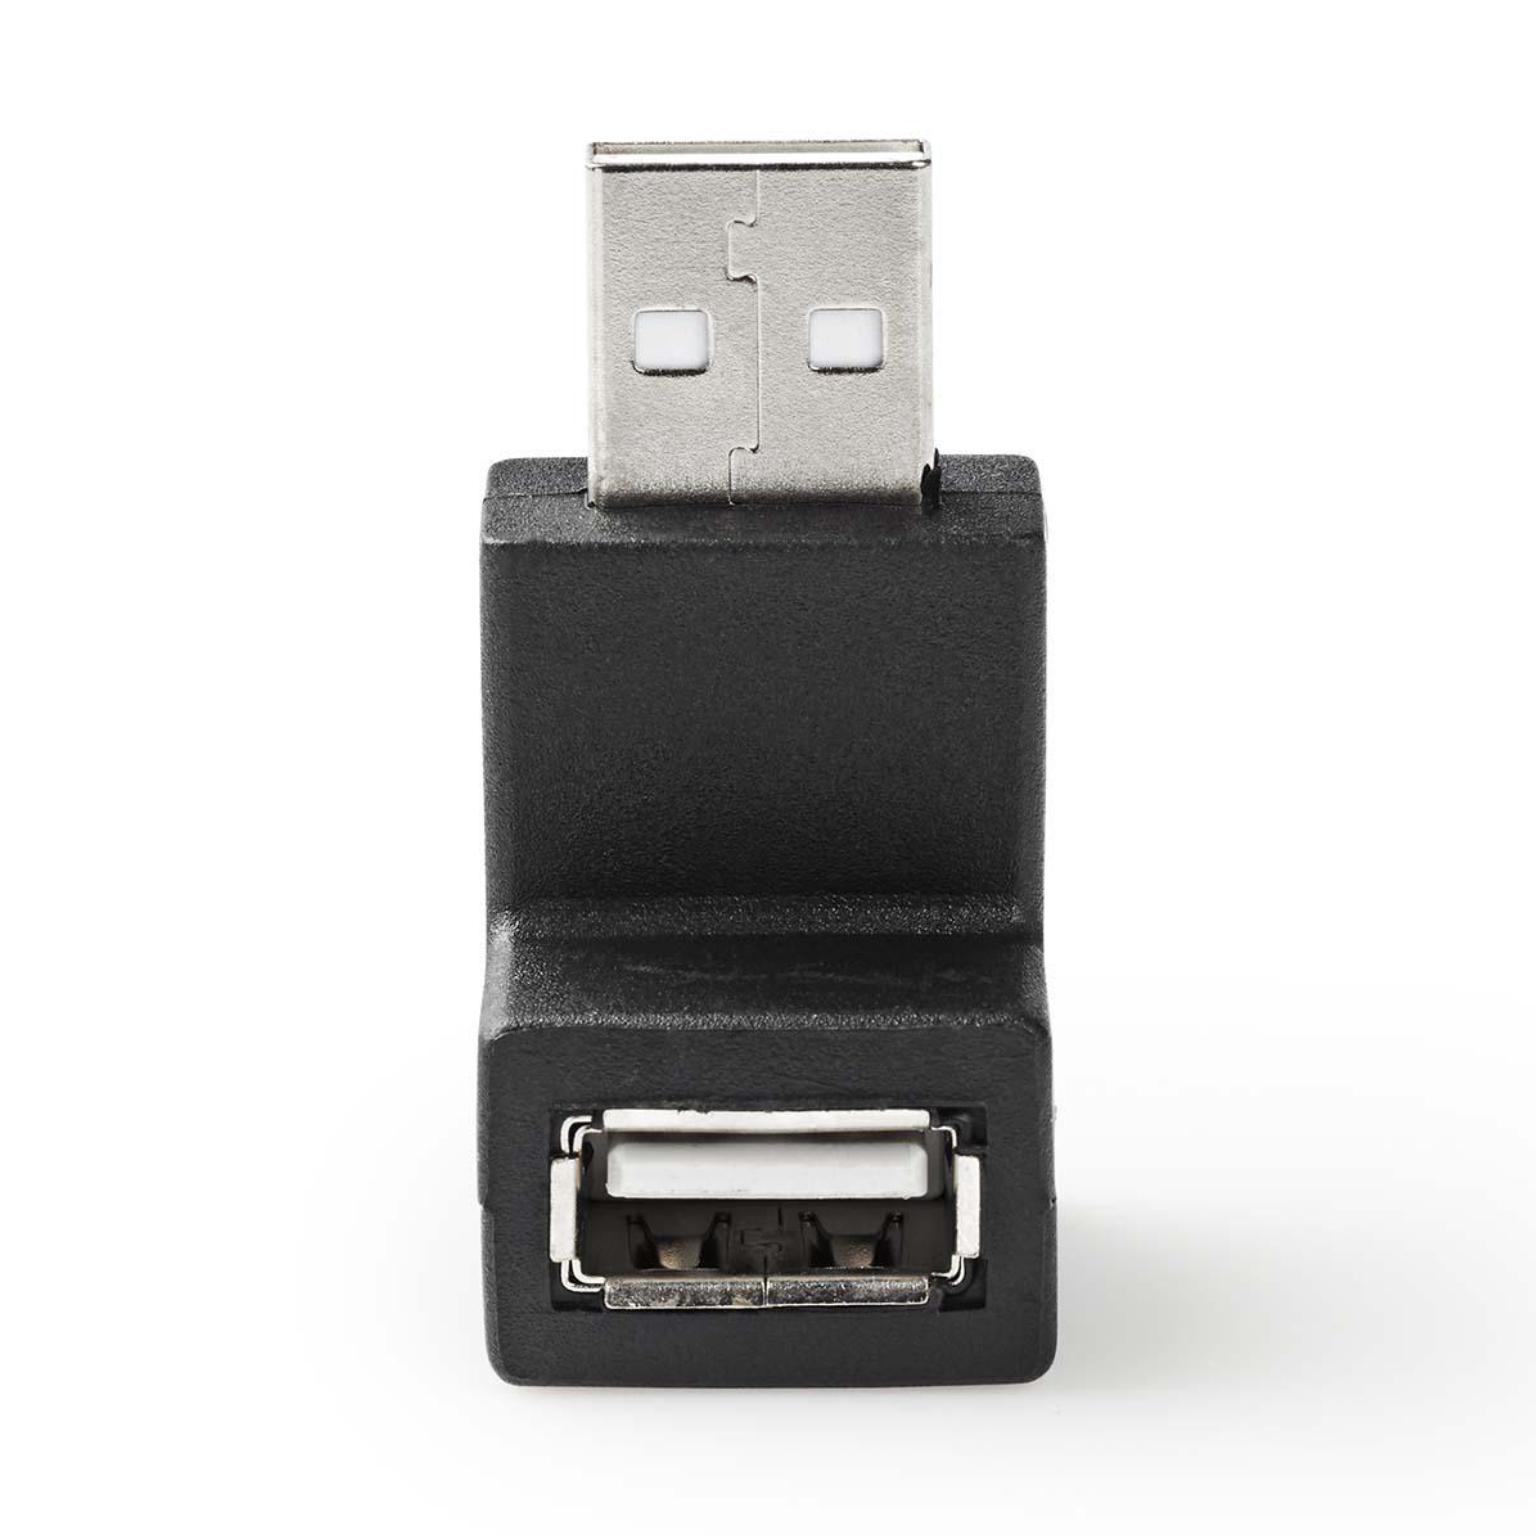 Proportioneel Assimileren Wijzer USB 2.0 A-A Haakse adapter 90 graden - Deze haakse USB2.0 A-A adapter zou  kunnen worden gebruikt om een USB kabel aan te sluiten op een LCD tv die  tegen een muur is gemonteerd.